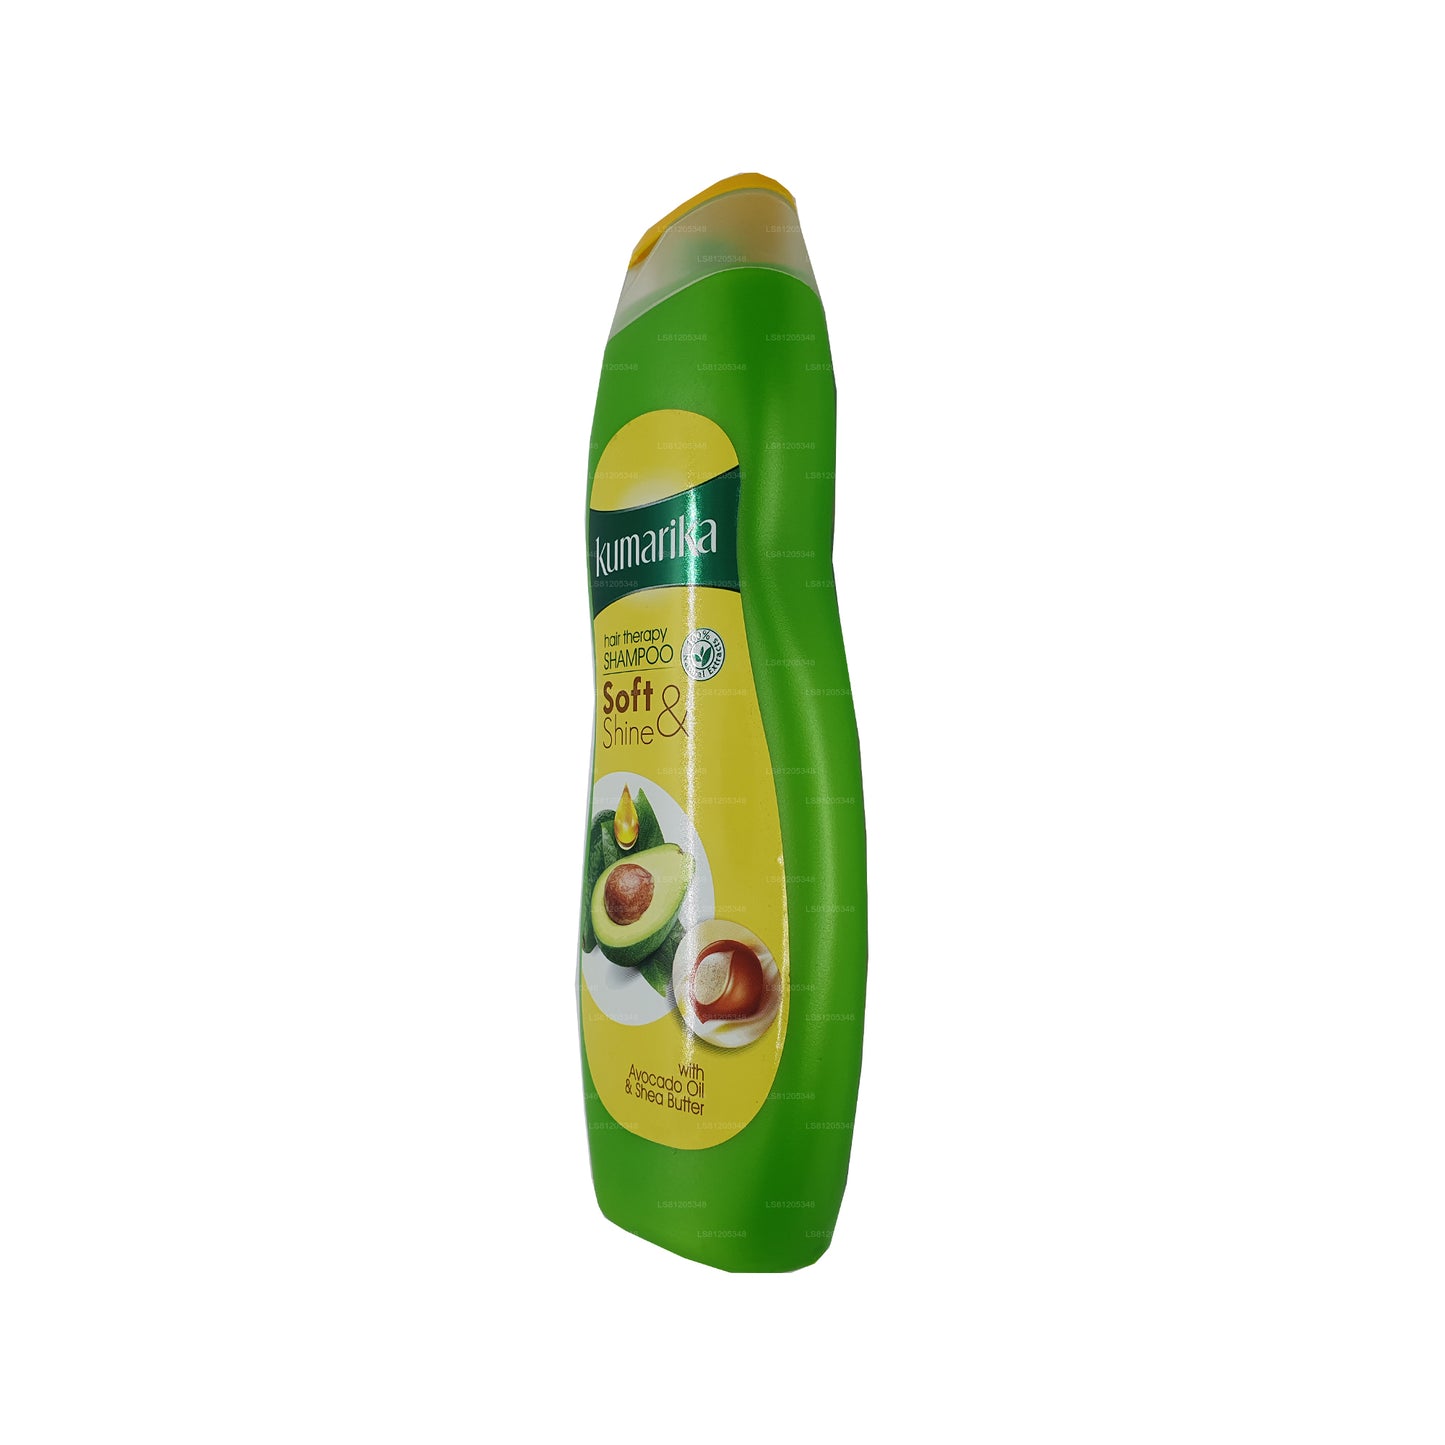 Kumarika shampoo voor zachte en glanzende haartherapie (180 ml)